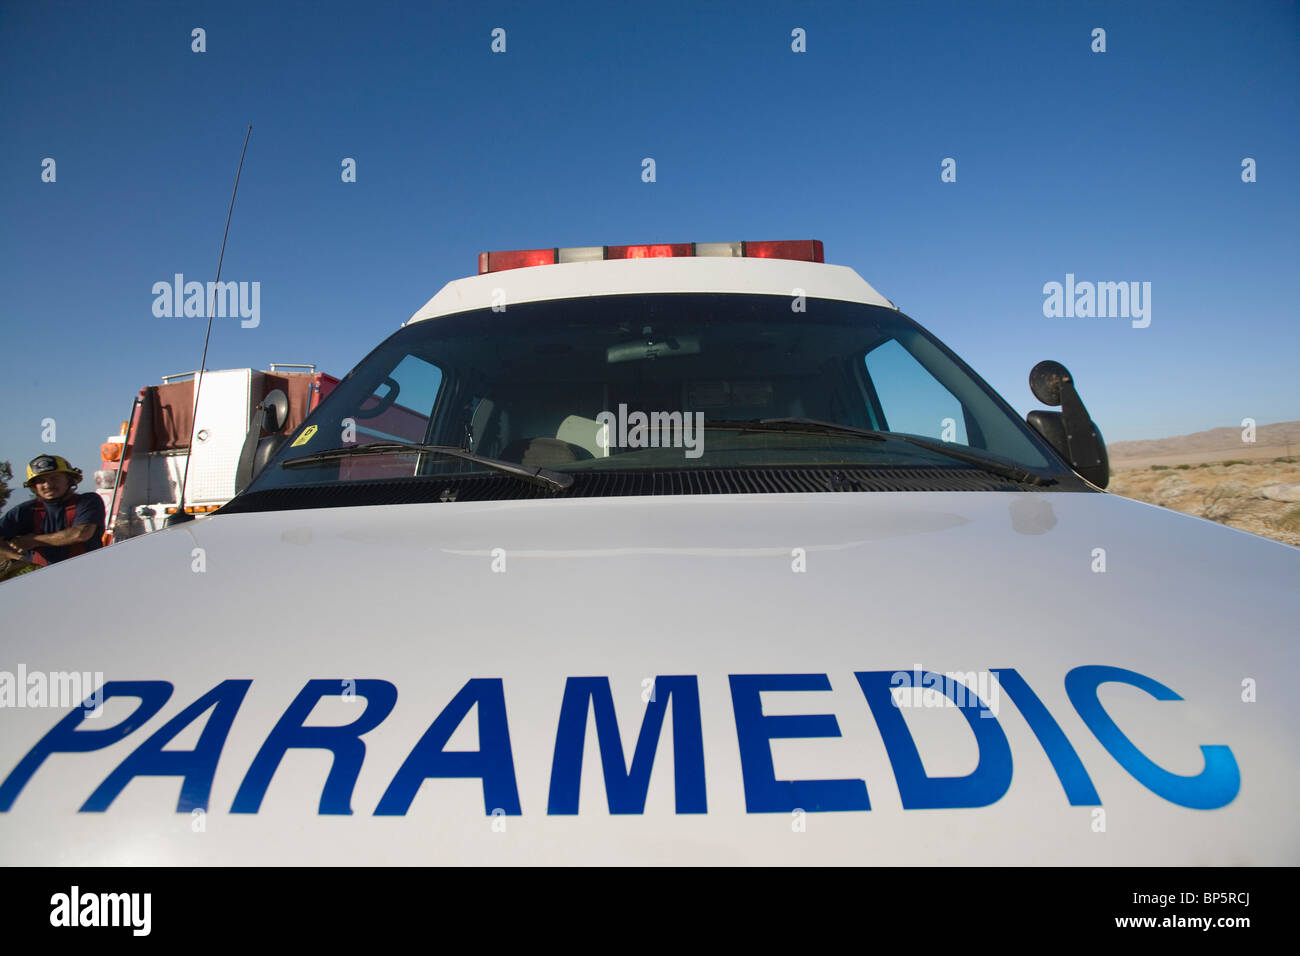 Ambulanciers paramédicaux Banque D'Images